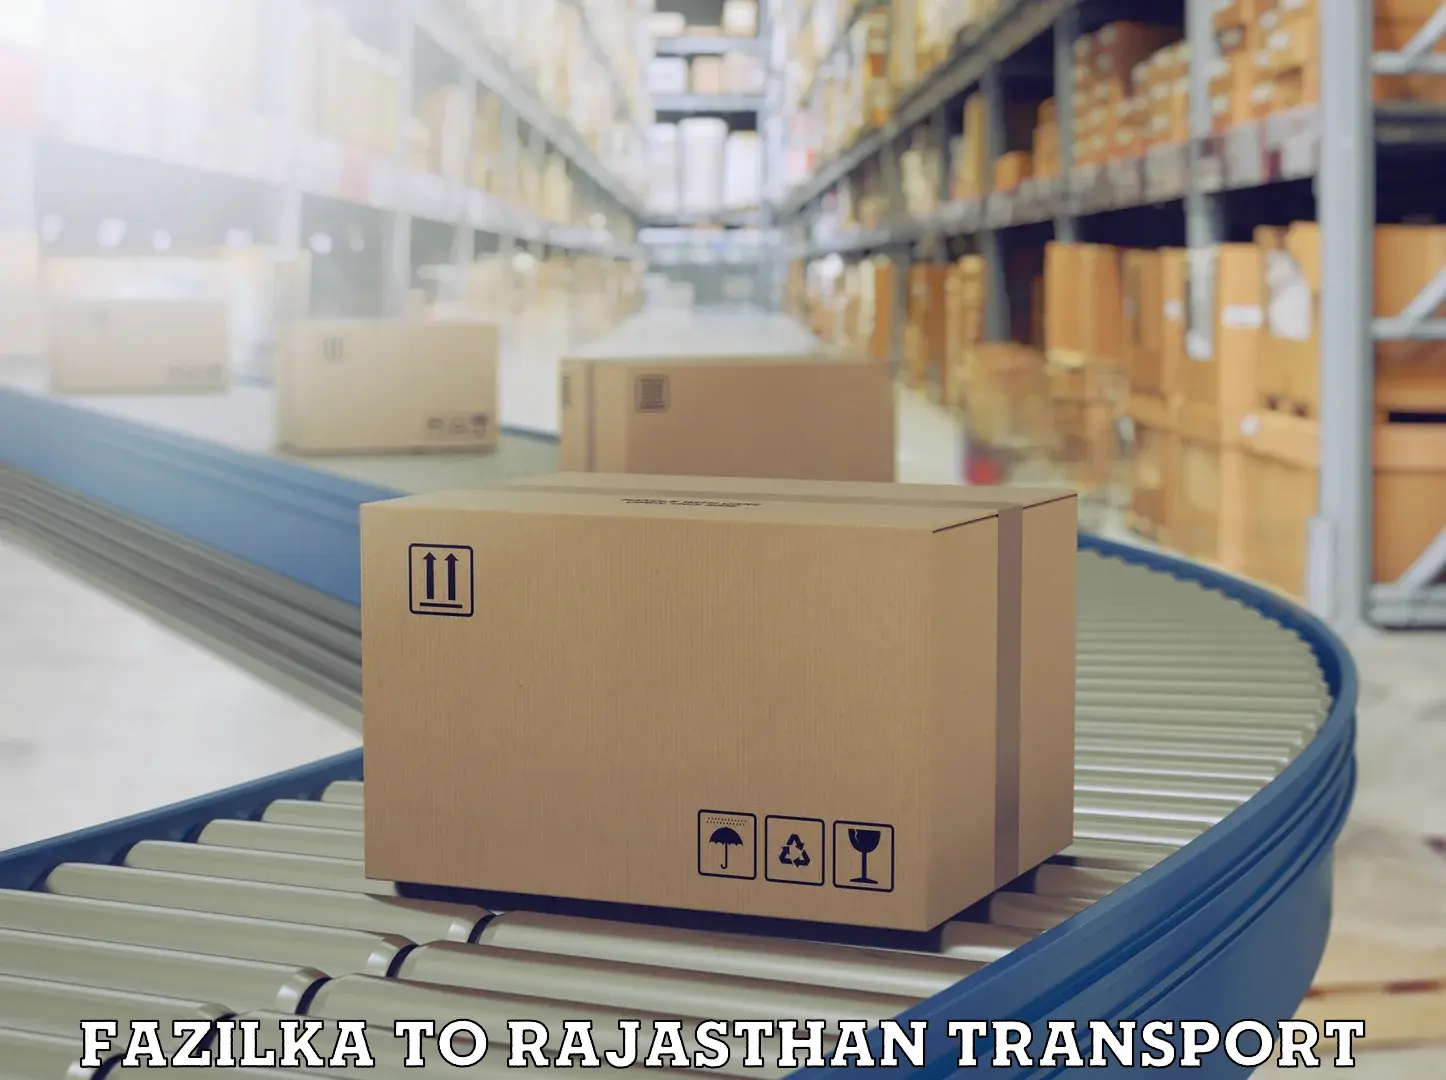 Container transport service Fazilka to Hindaun